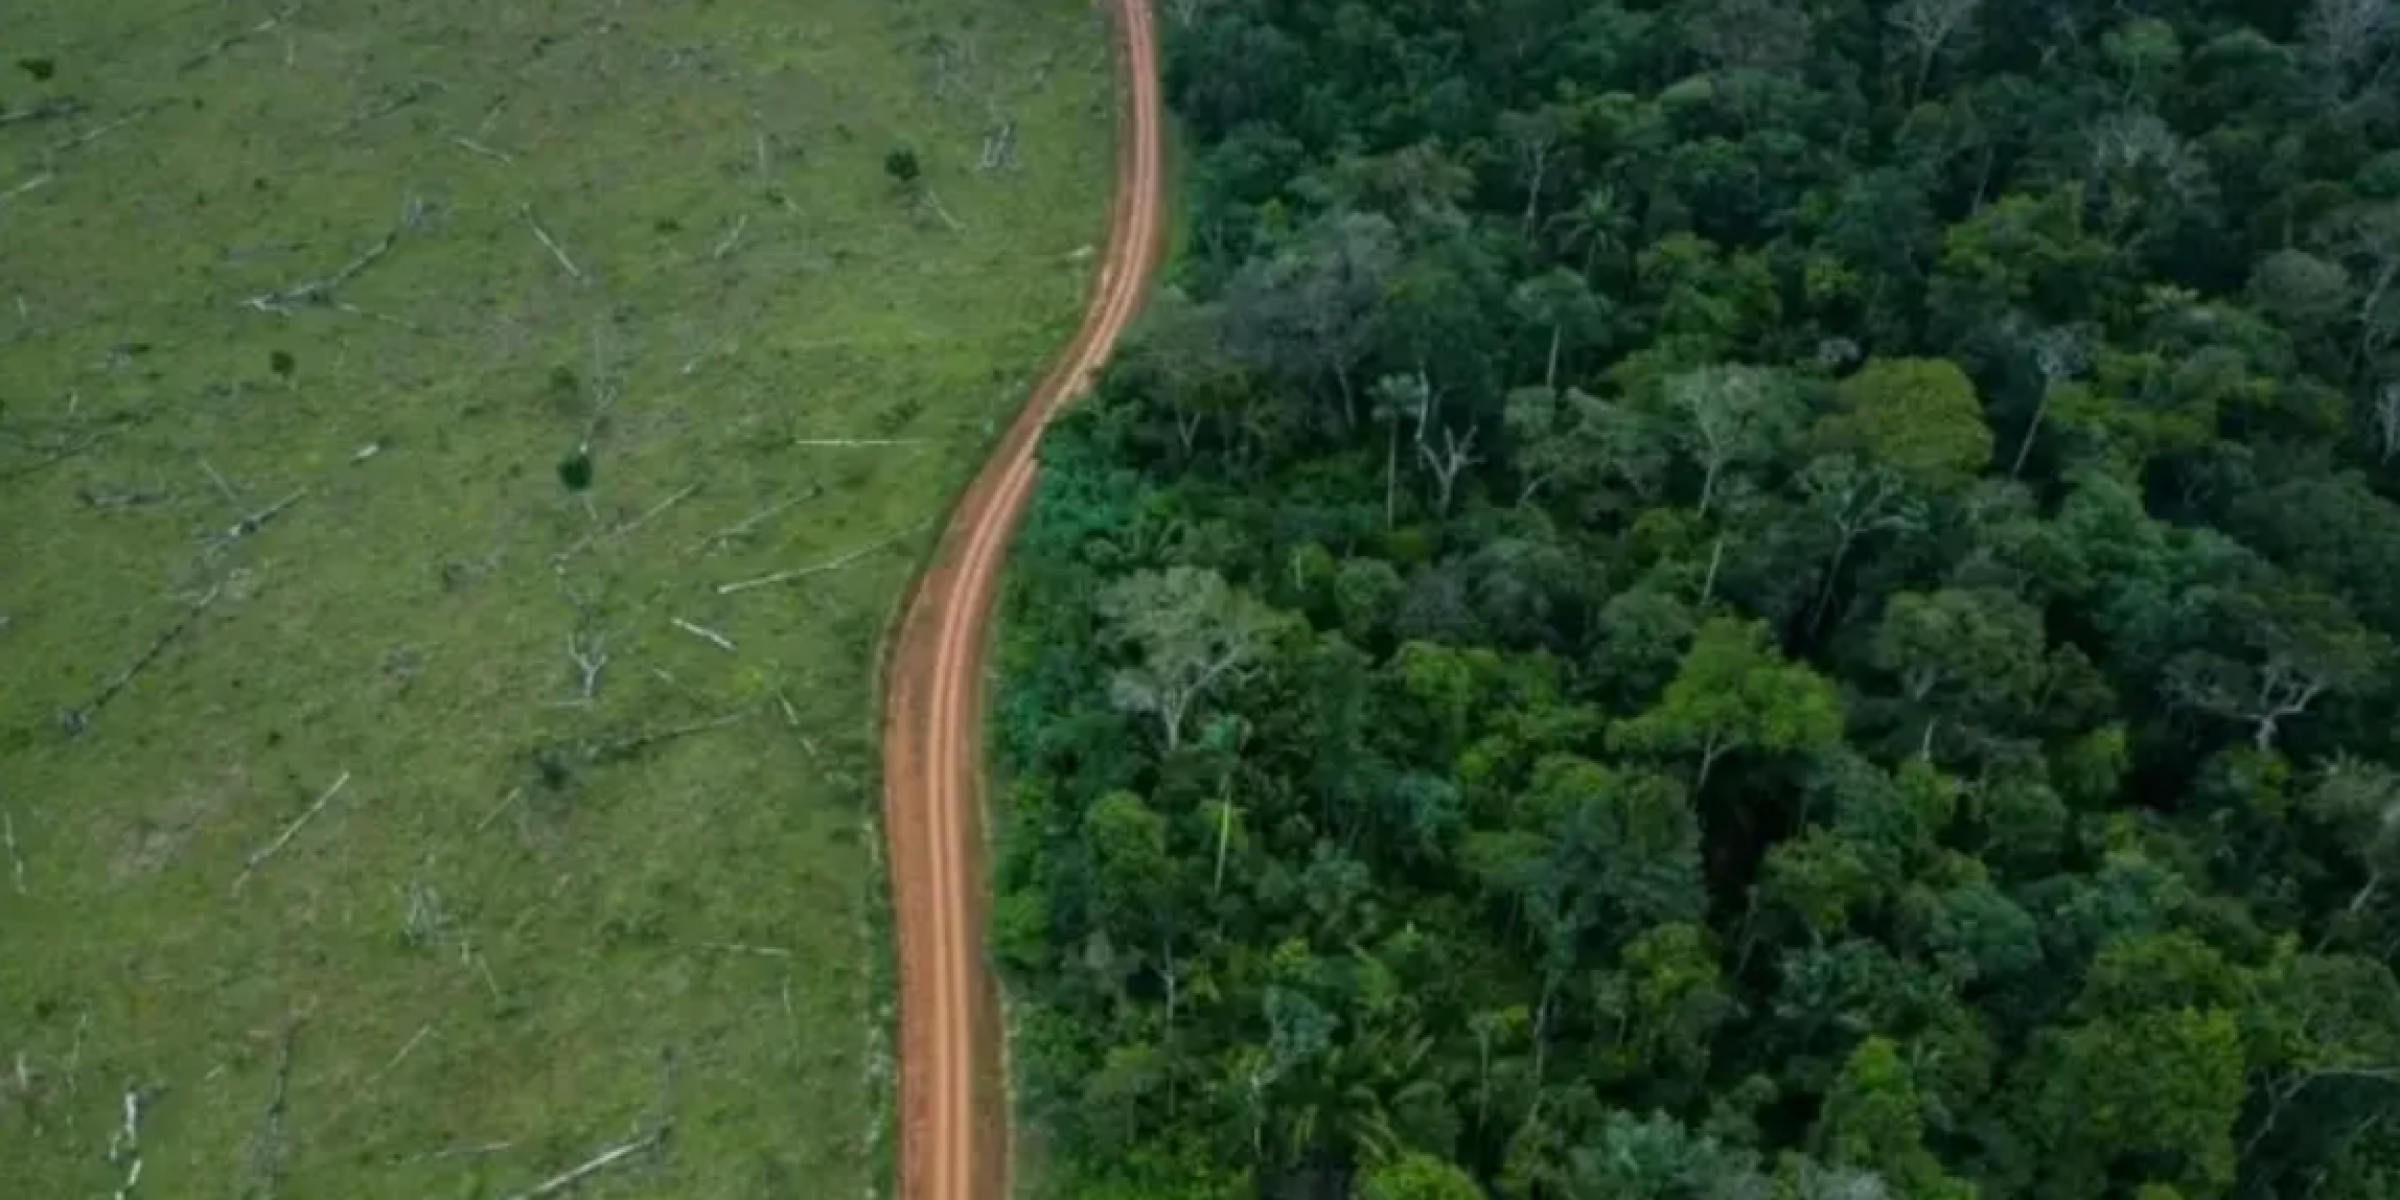 Como rodovia que liga Amazônia ao resto do país divide o governo Lula